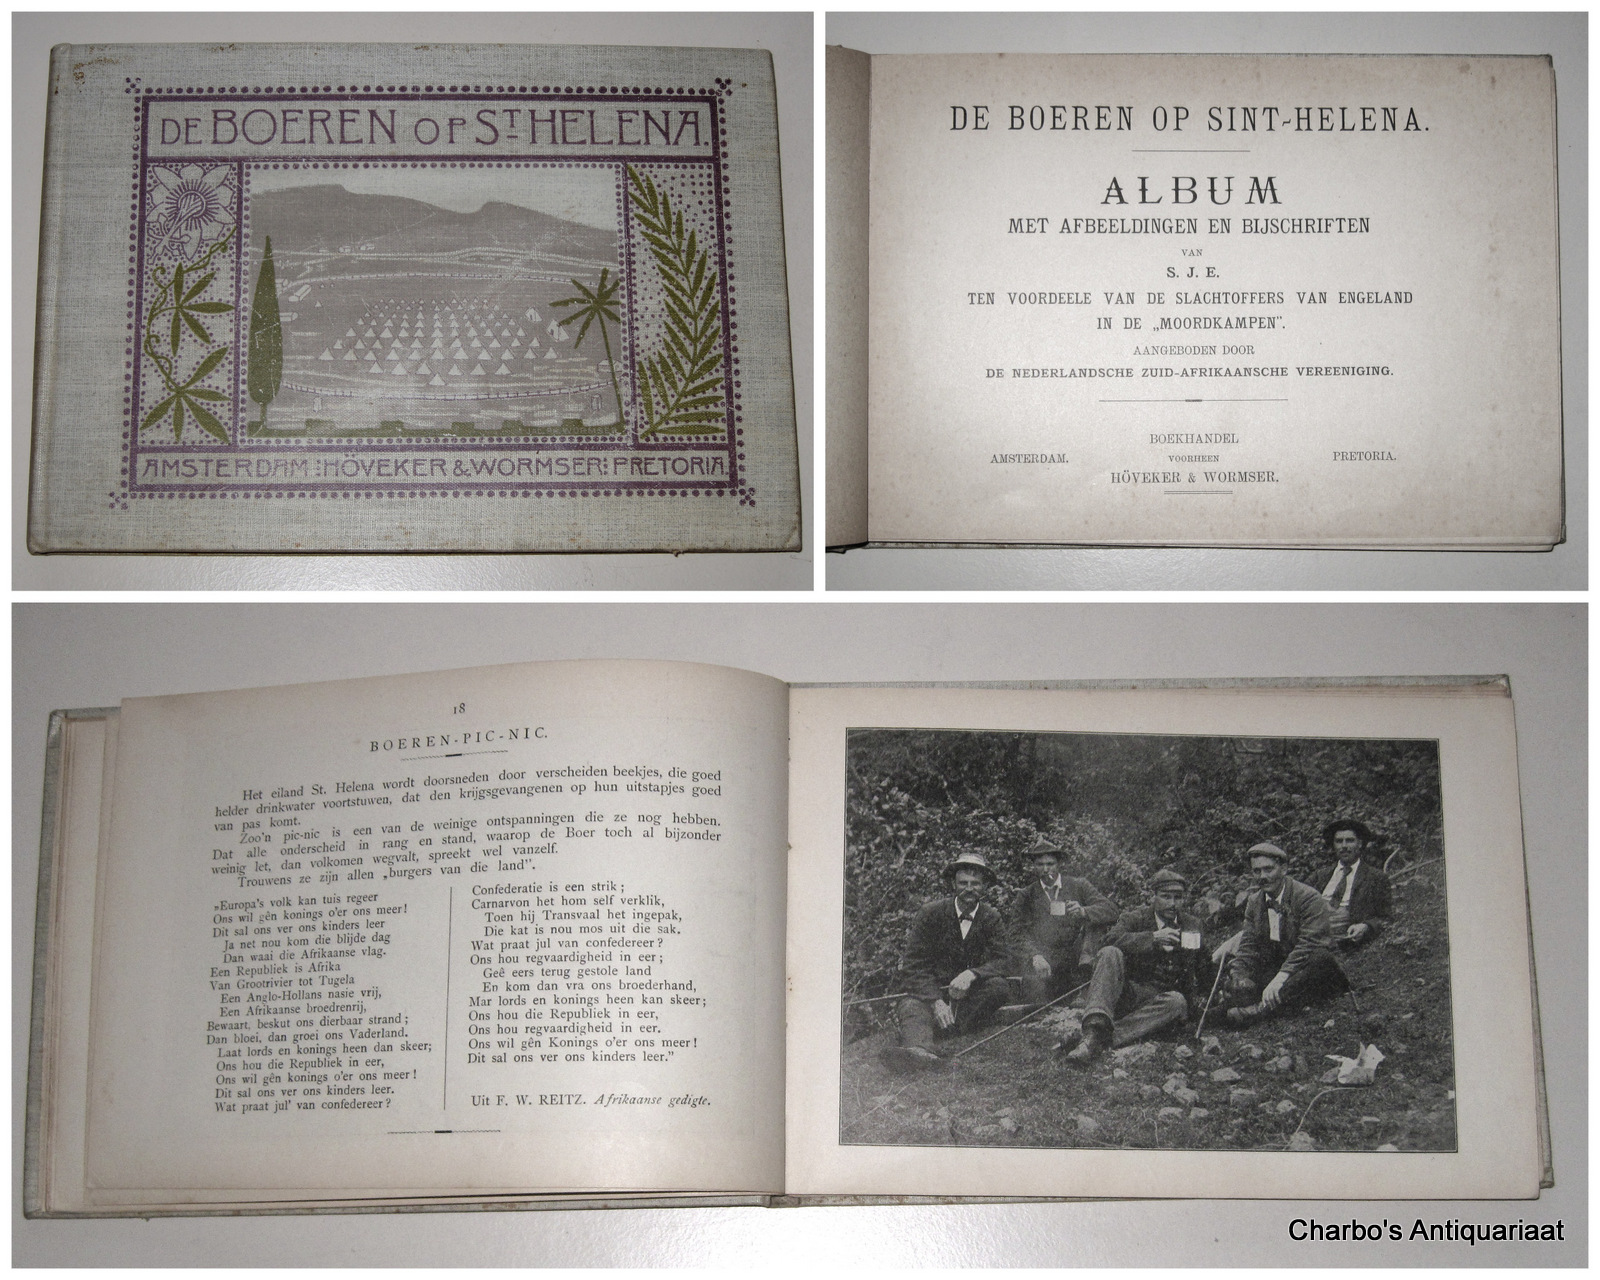 E., S.J., -  De Boeren op Sint-Helena. Album met afbeeldingen en bijschriften van S.J.E., ten voordeele van de slachtoffers van Engeland in de 'moordkampen'. Aangeboden door de Nederlandsche Zuid-Afrikaansche Vereeniging.